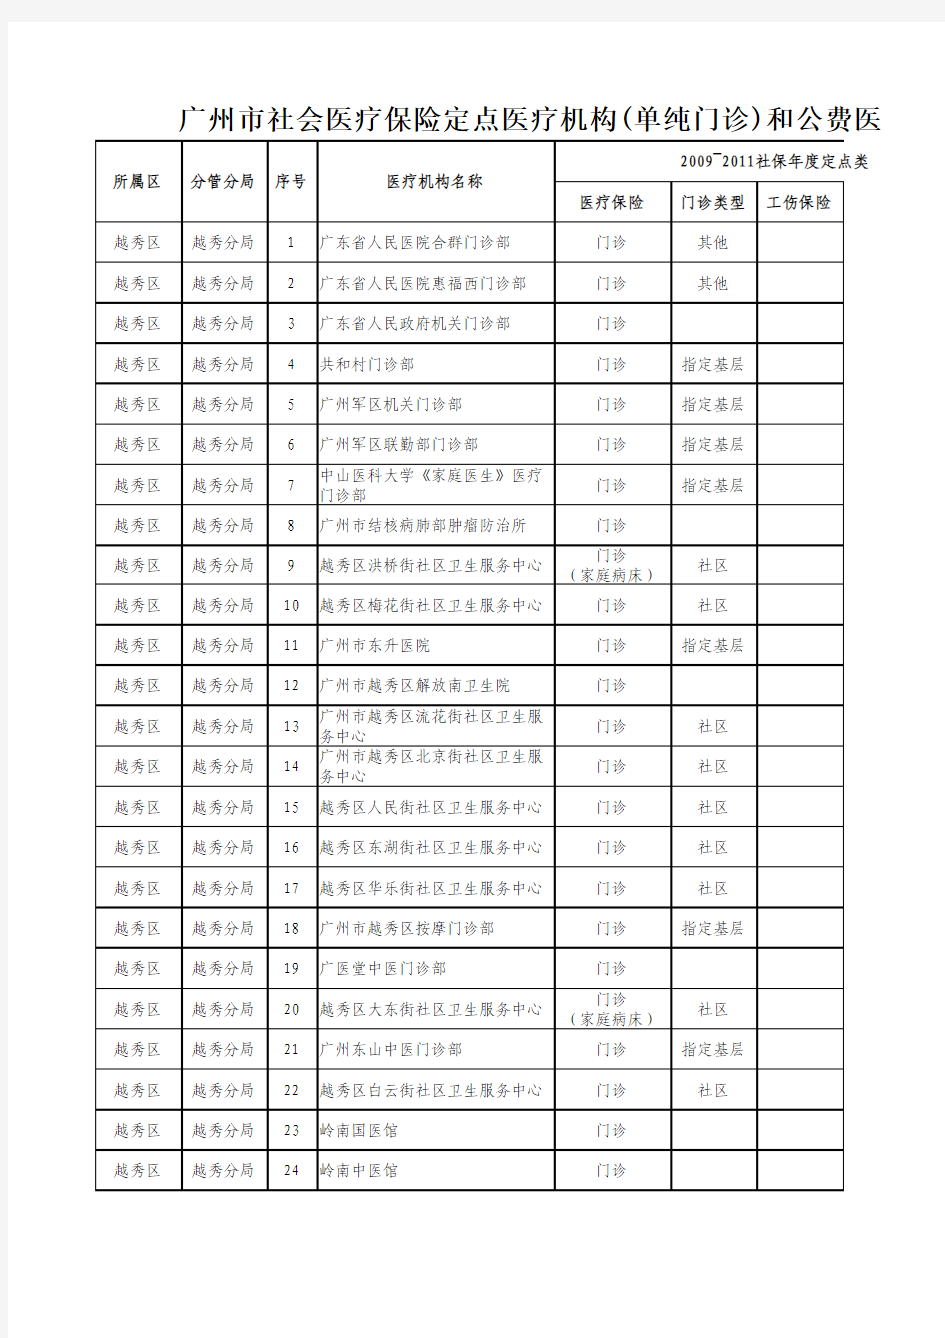 广州市社会医疗保险定点医疗机构(单纯门诊)和公费医疗挂钩医院分区管理一览表